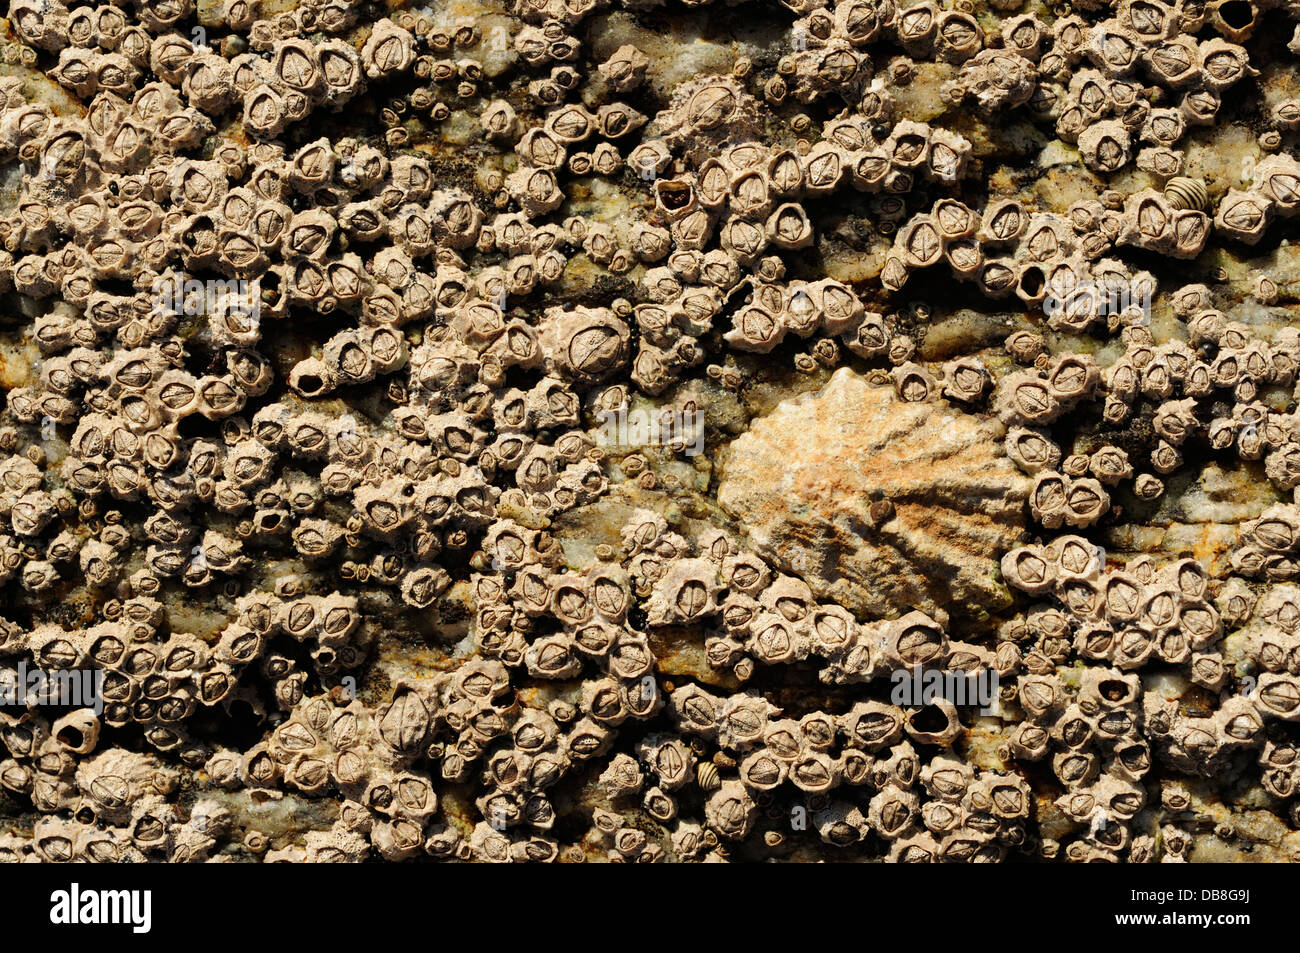 Les patelles et les glands de la mer couvrant une aire marine rock Banque D'Images